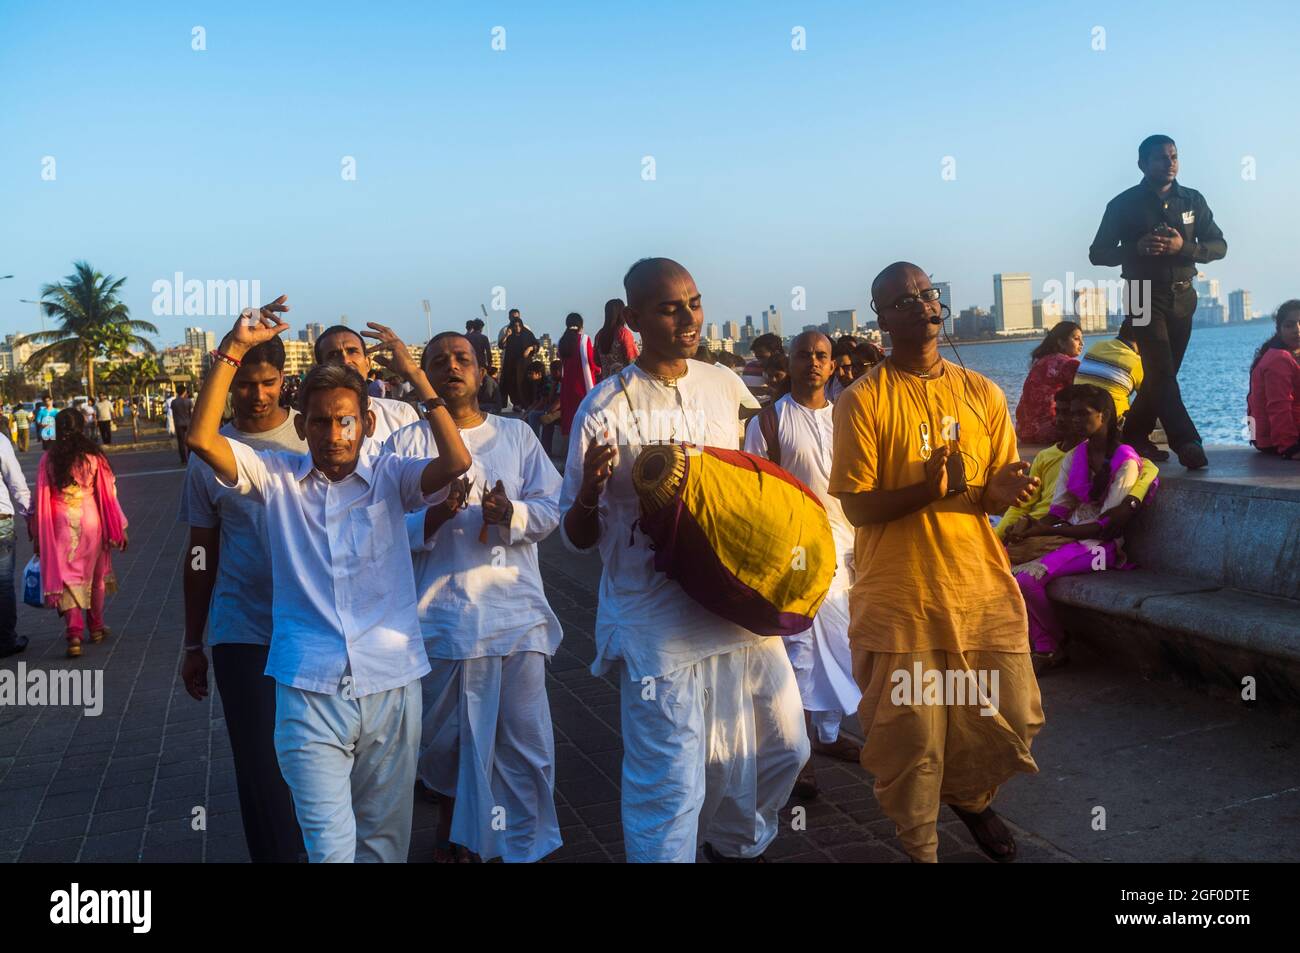 Mumbai, Maharashtra, India : A group of Hare Krishna followers parade along the 3.6-kilometre-long Marine Drive promenade by the Arabian Sea. Stock Photo